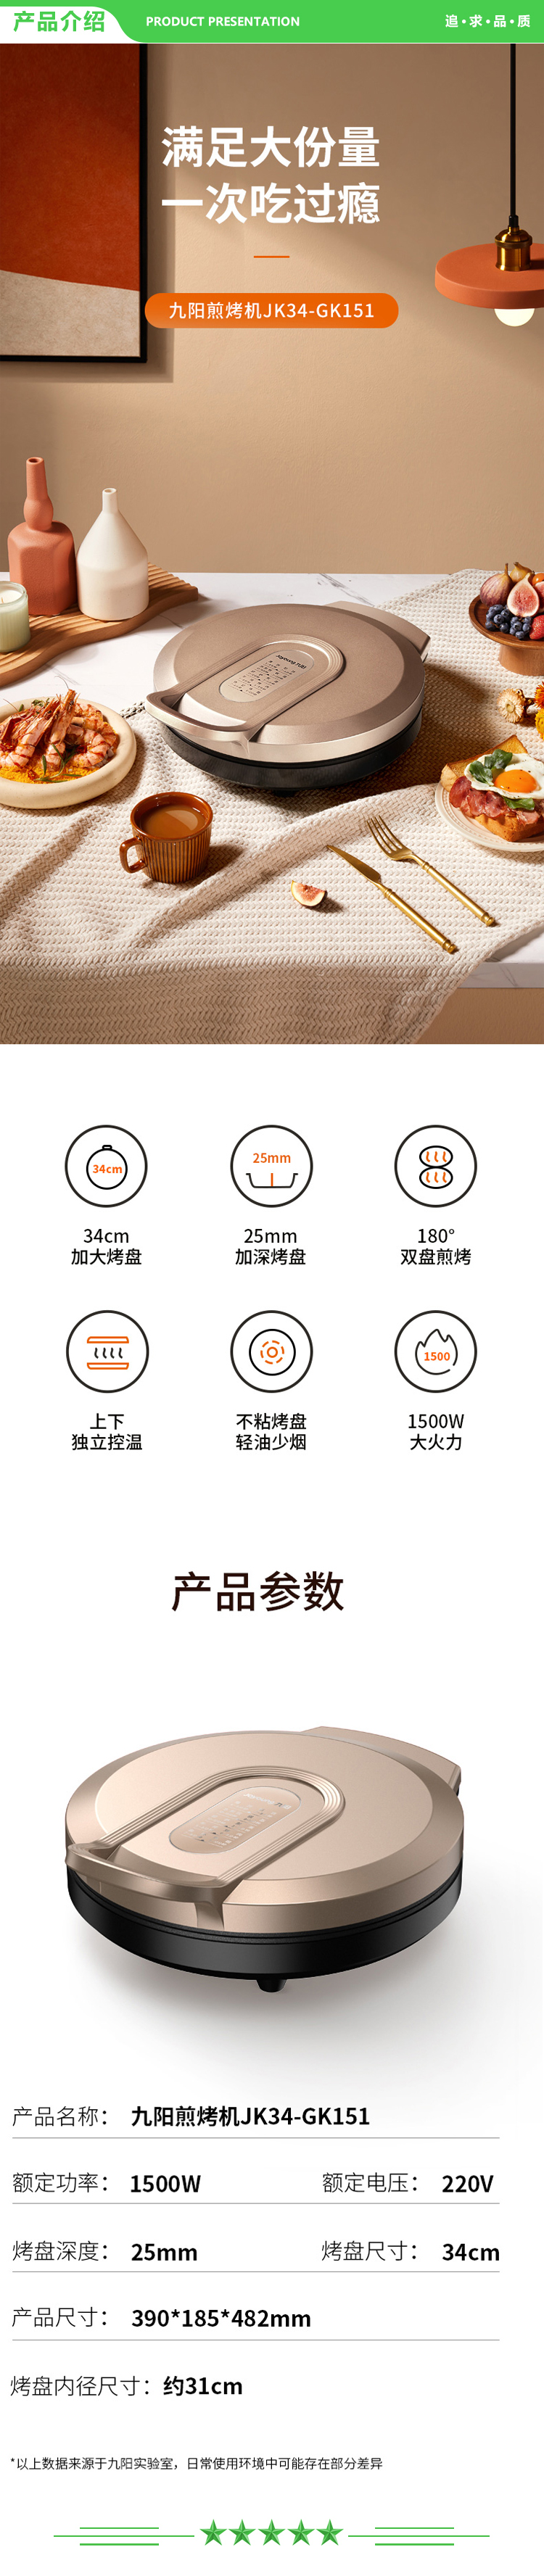 九阳 Joyoung JK34-GK151 ZMD安心系列 煎烤烙饼机 1500W大火力 悬浮烤盘 多功能电饼铛.jpg